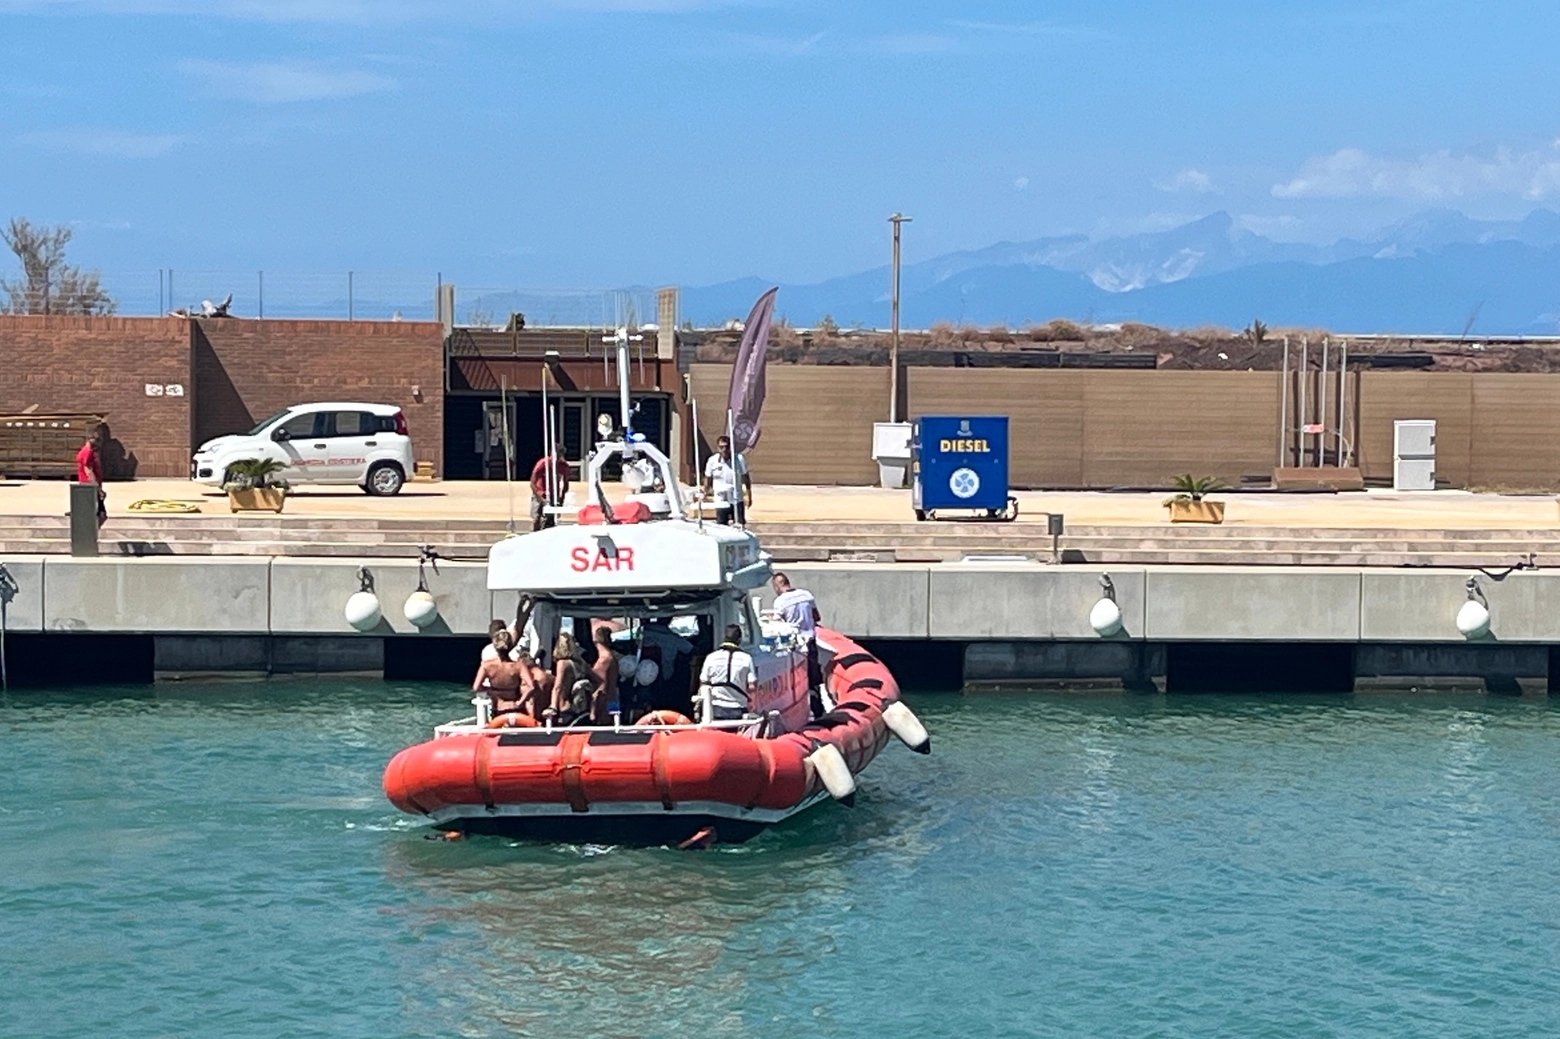 Le persone a bordo della barca andata a fuoco mentre vengono riportate a Marina di Pisa dalla guardia costiera